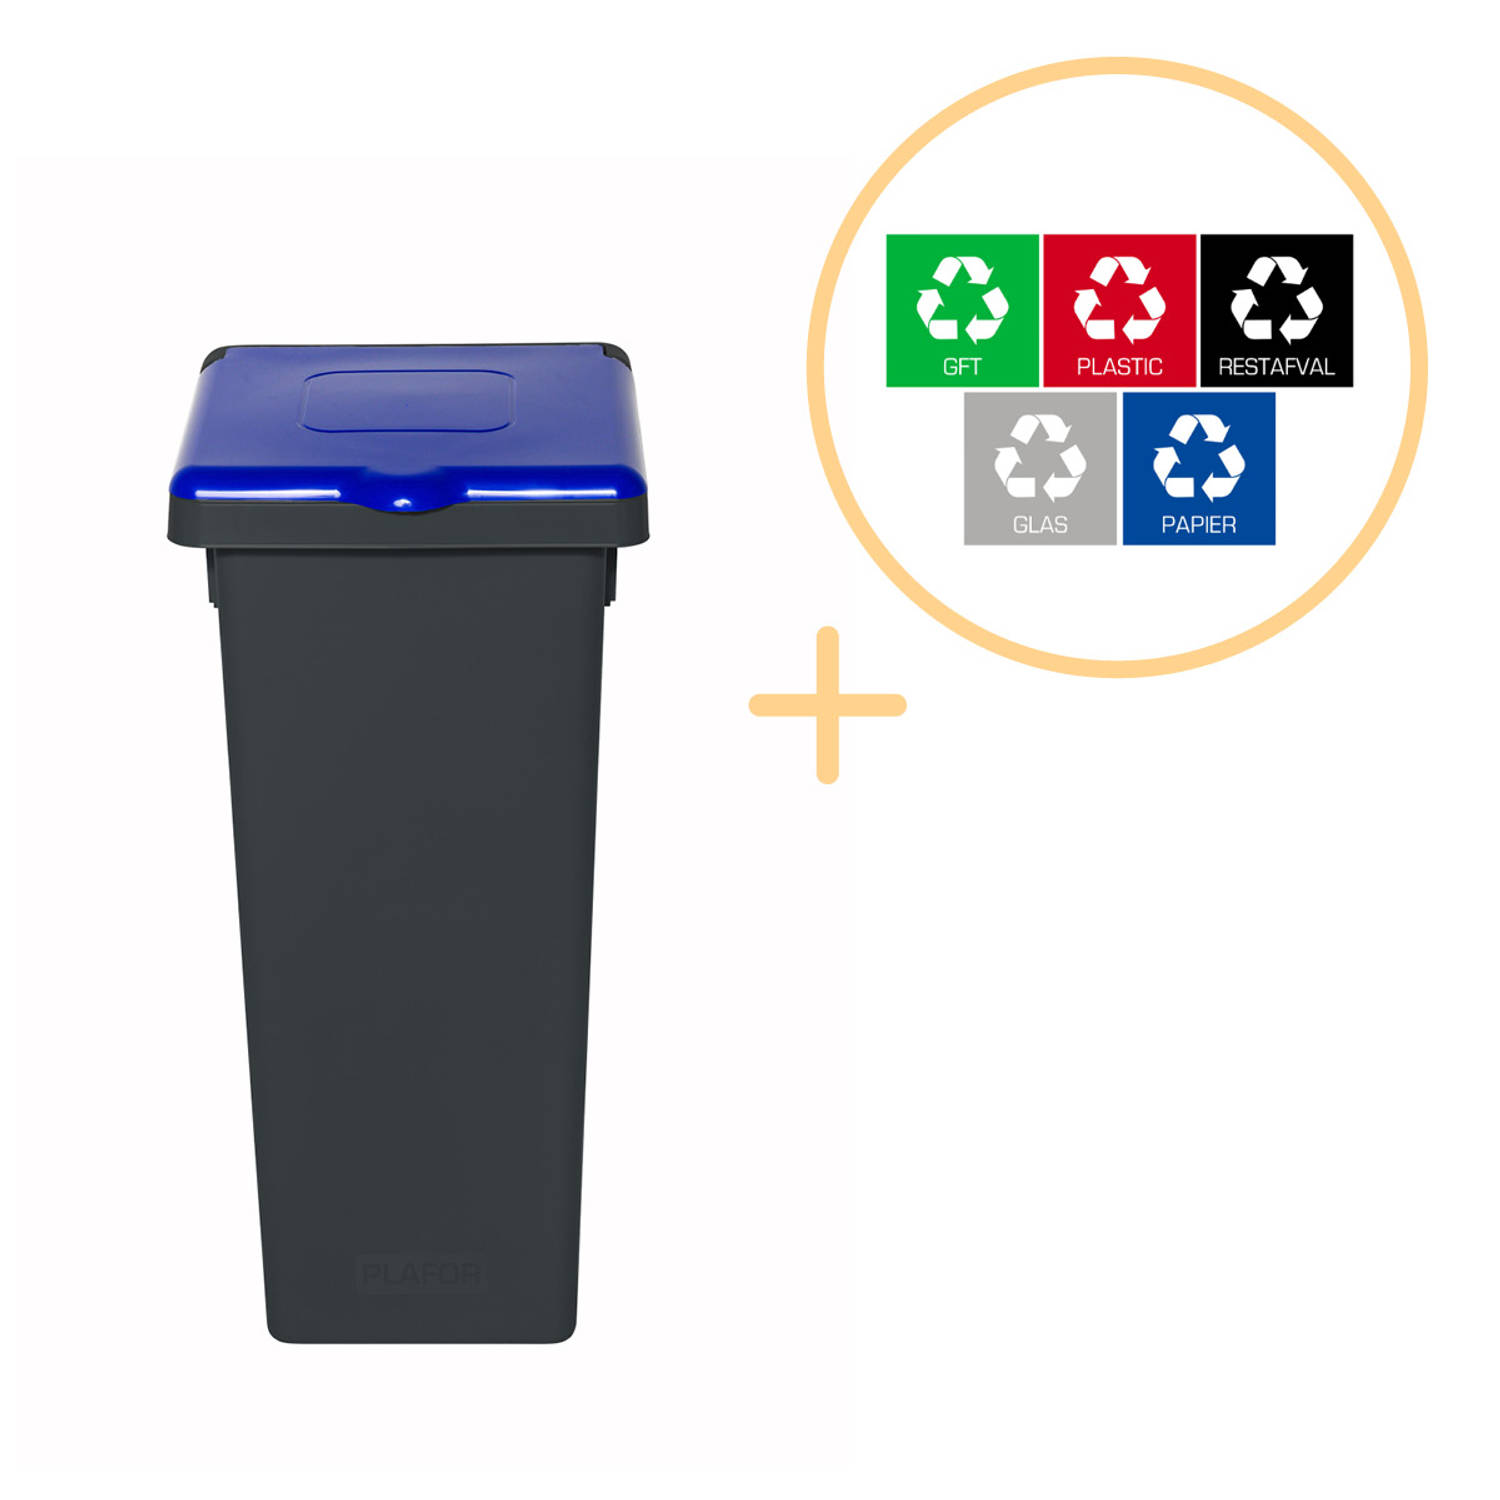 Plafor Fit Bin, Prullenbak met Deksel voor Afvalscheiding - 75L – Grijs/Blauw- Inclusief 5-delige Stickerset - Afvalbak voor gemakkelijk Afval Scheiden en Recycling - Afvalemmer -